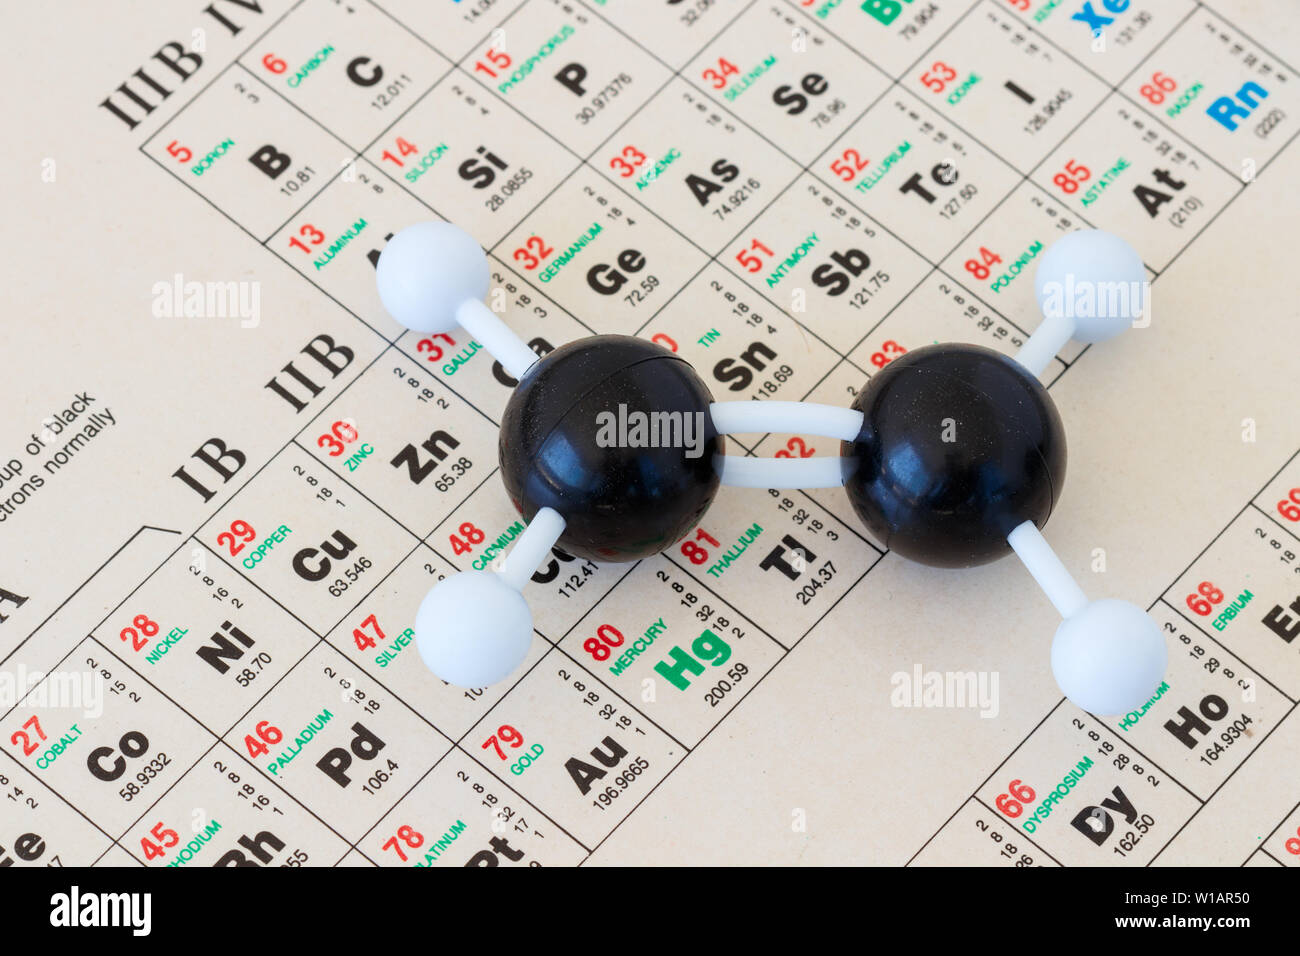 Tableau périodique des éléments avec une balle en plastique et le bâton, modèle d'une molécule d'éthylène ou l'éthylène (C2H6). Petite profondeur de champ. Banque D'Images